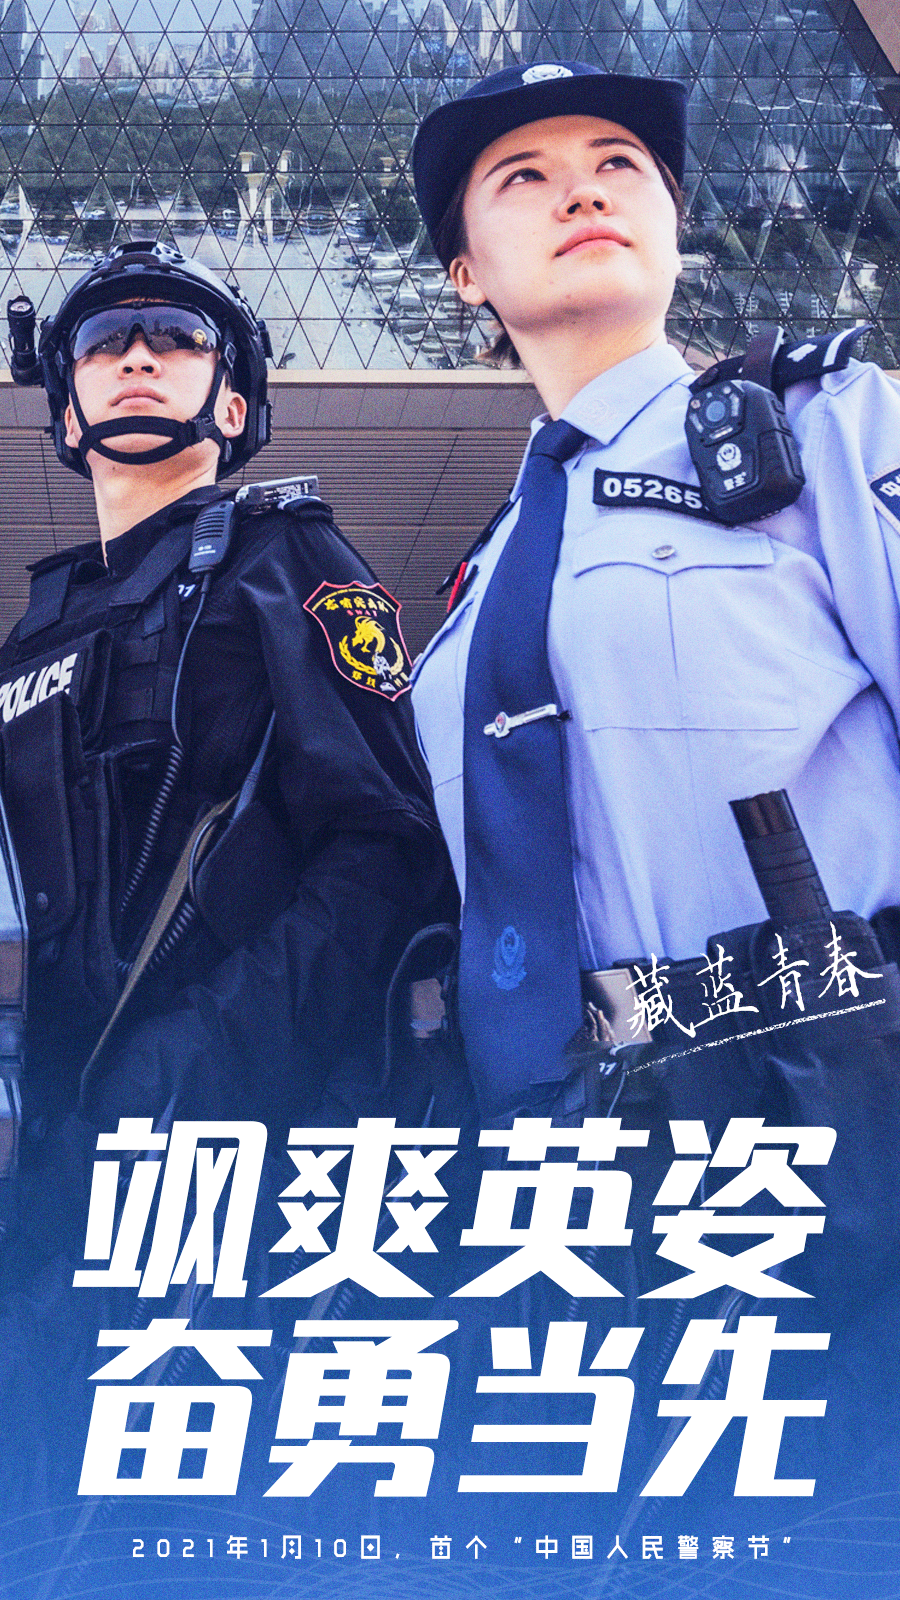 110警察节|致敬中国人民警察节,这波特警身影,特帅!